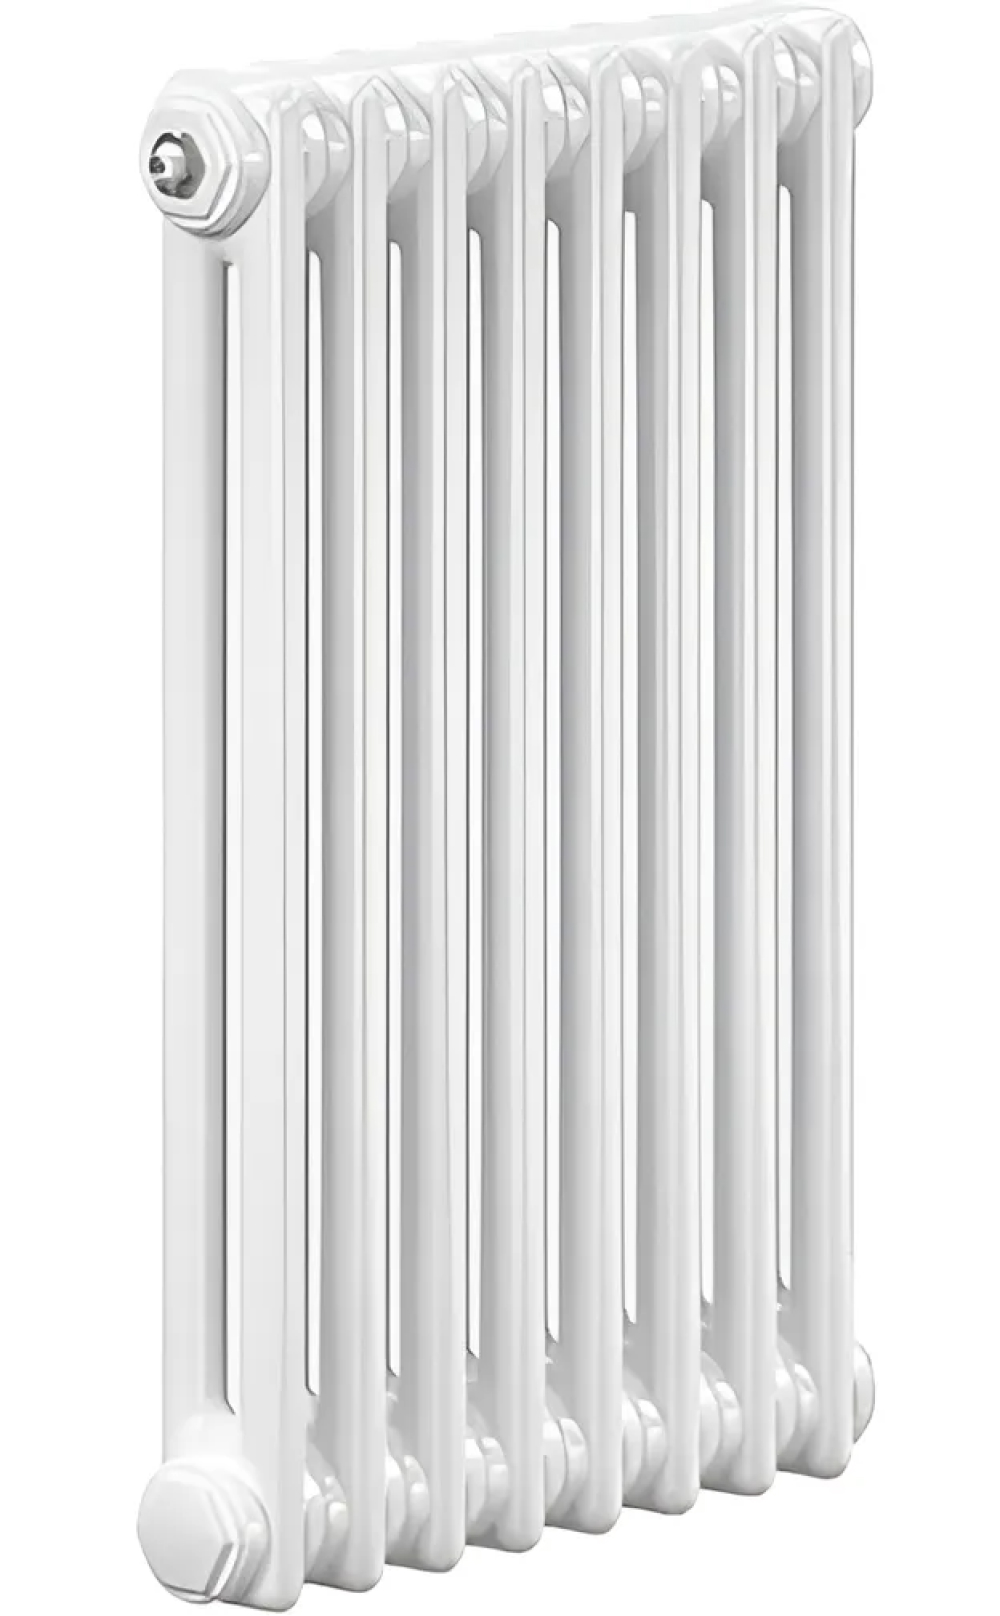 Радиаторы стальные трубчатые IRSAP Tesi 2 высота 1200 мм, 4-20 секций, присоединение резьбовое - 1/2″, нижнее подключение - термостат сверху T25, теплоотдача 419-2095 Вт, цвет - белый